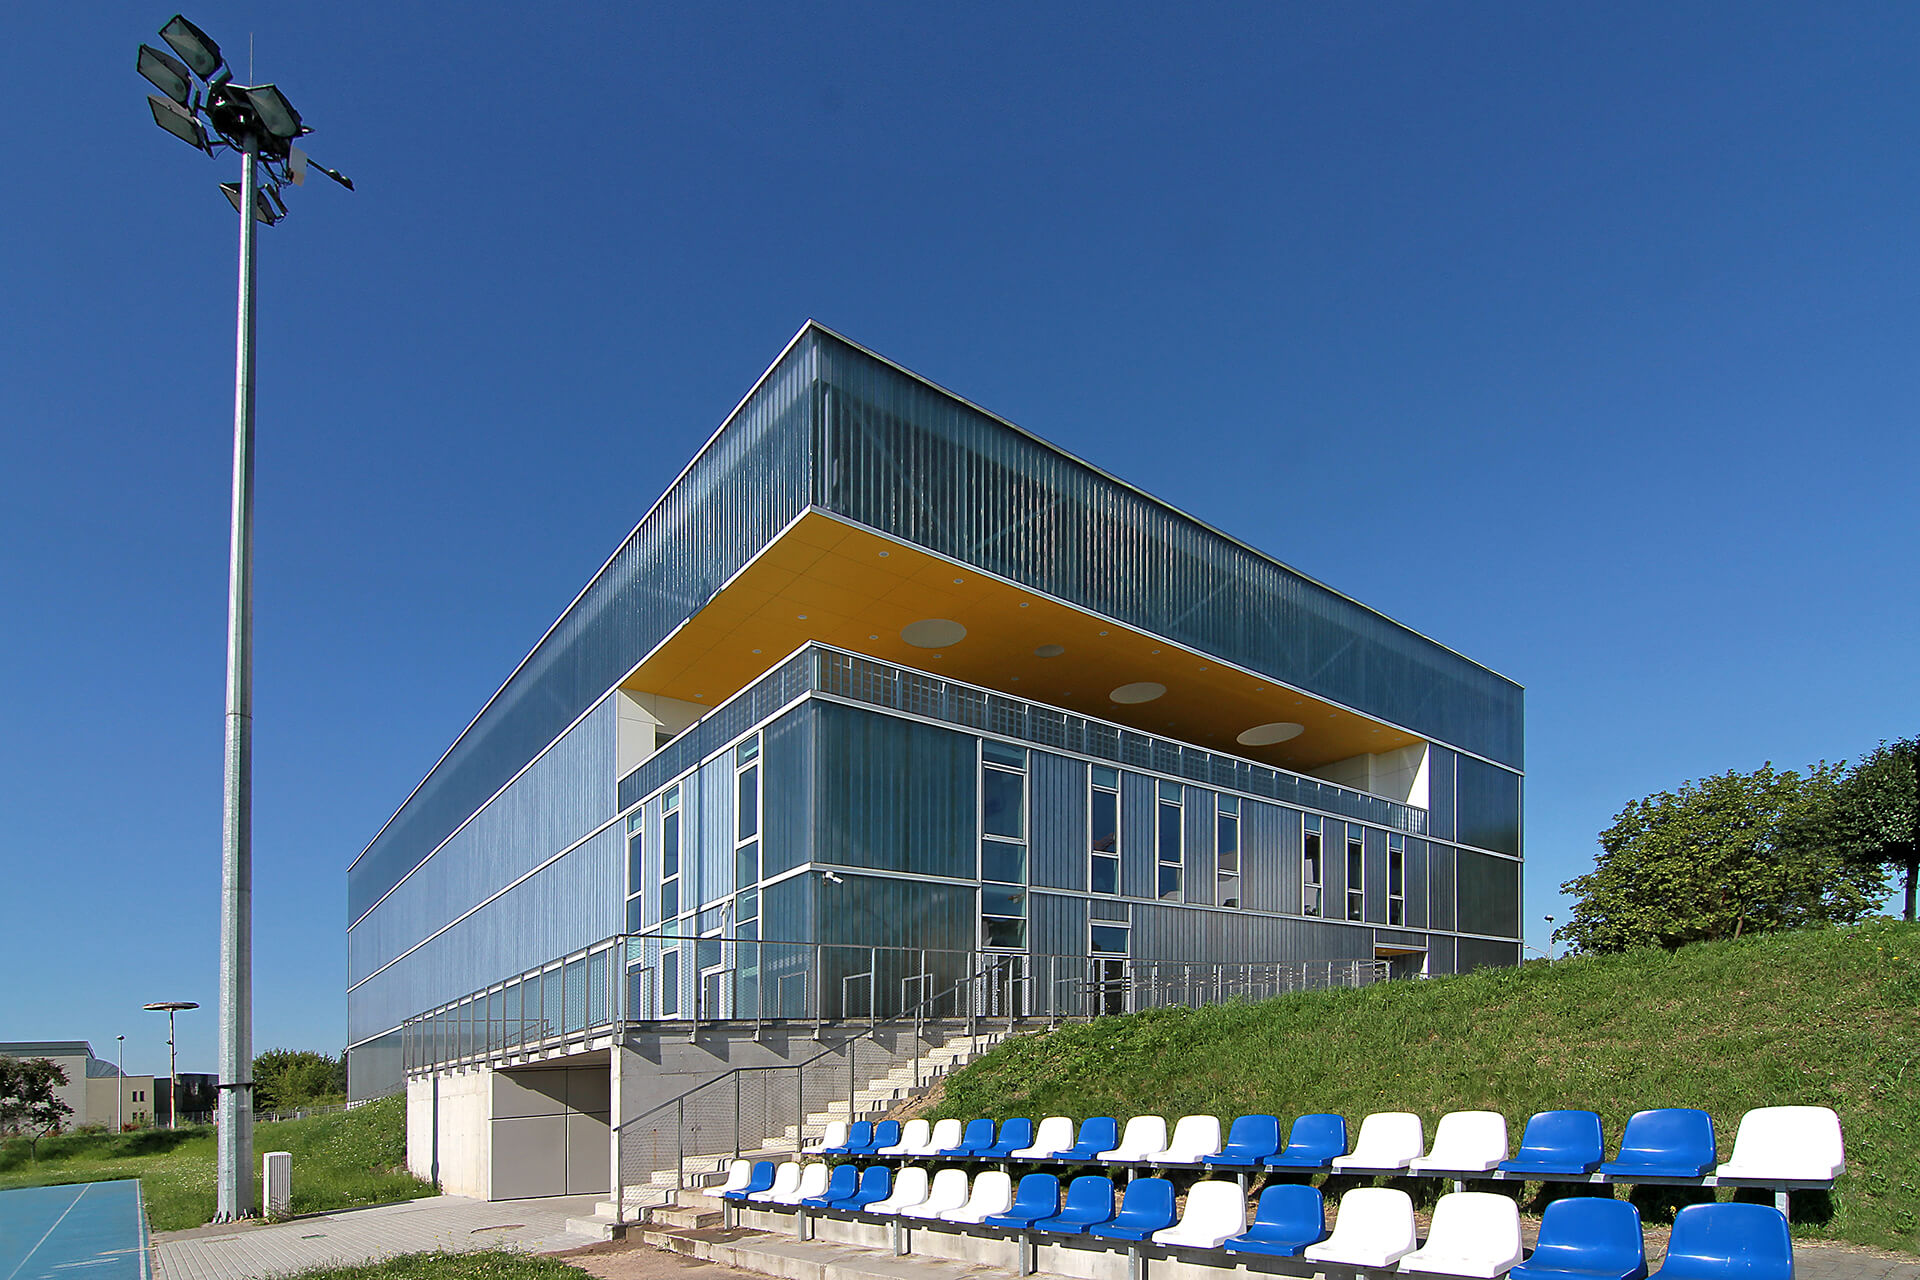 Hala Sportowa AWF Poznań - Pojekt architektów Neostudio